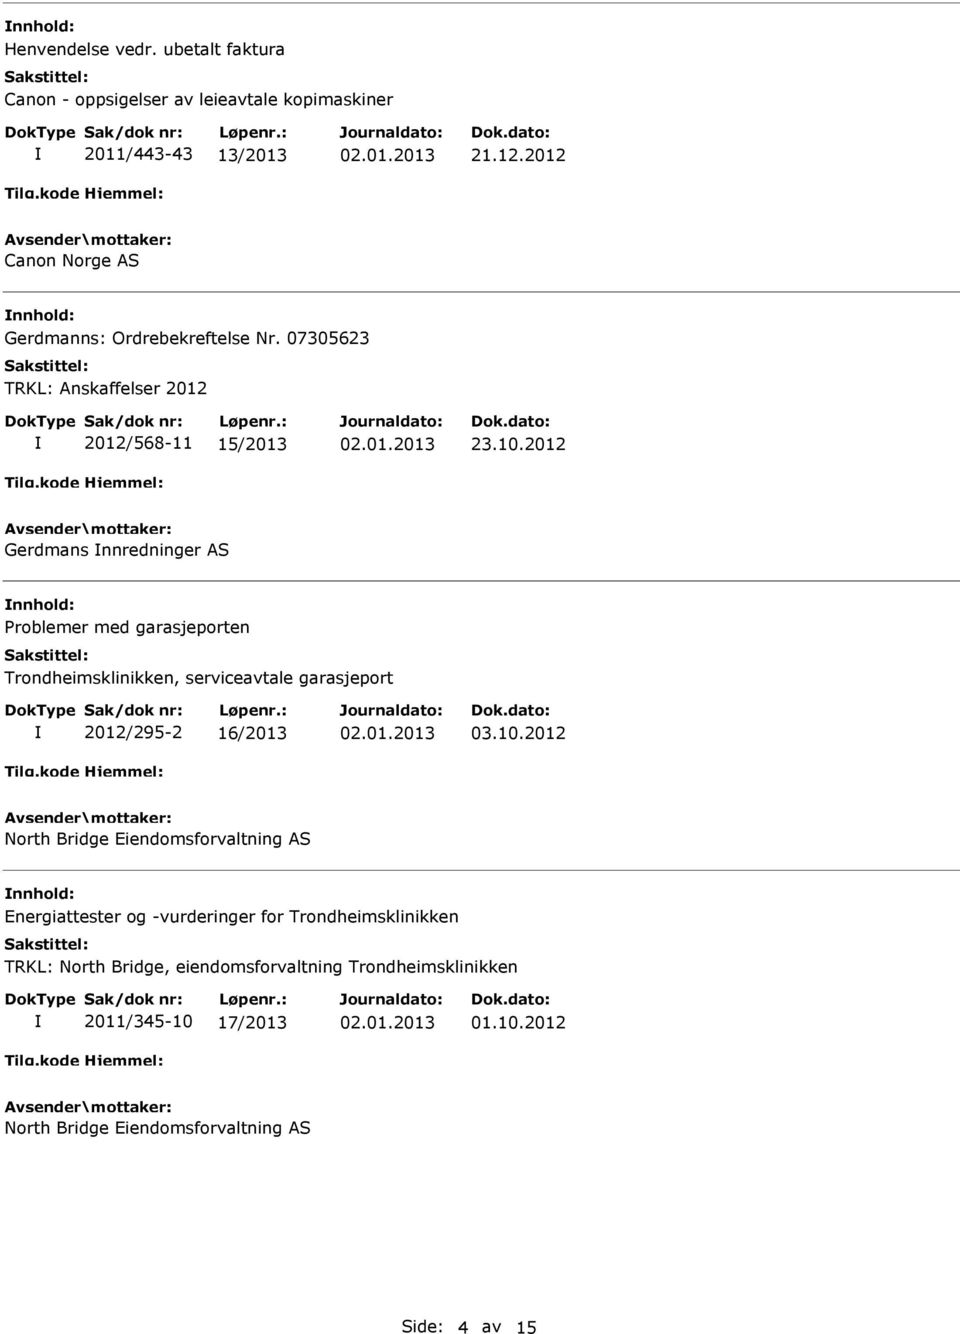 2012 Gerdmans nnredninger AS Problemer med garasjeporten Trondheimsklinikken, serviceavtale garasjeport 2012/295-2 16/2013 03.10.